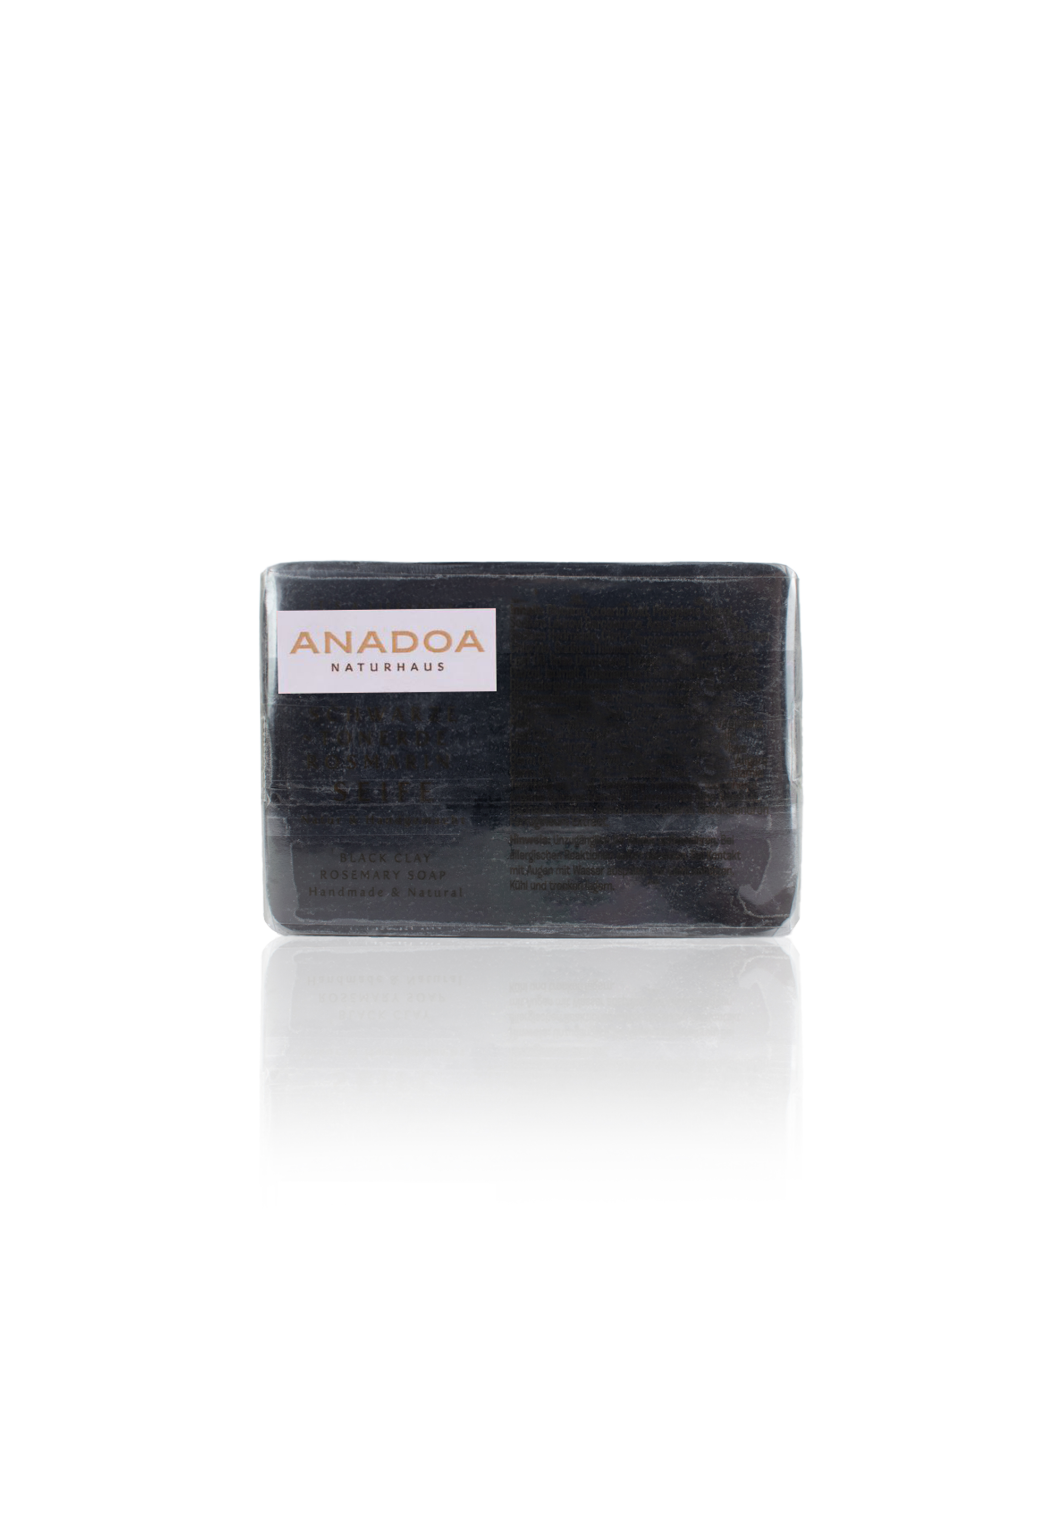 Anadoa Black Clay Rosemary Natural Soap - Handmade